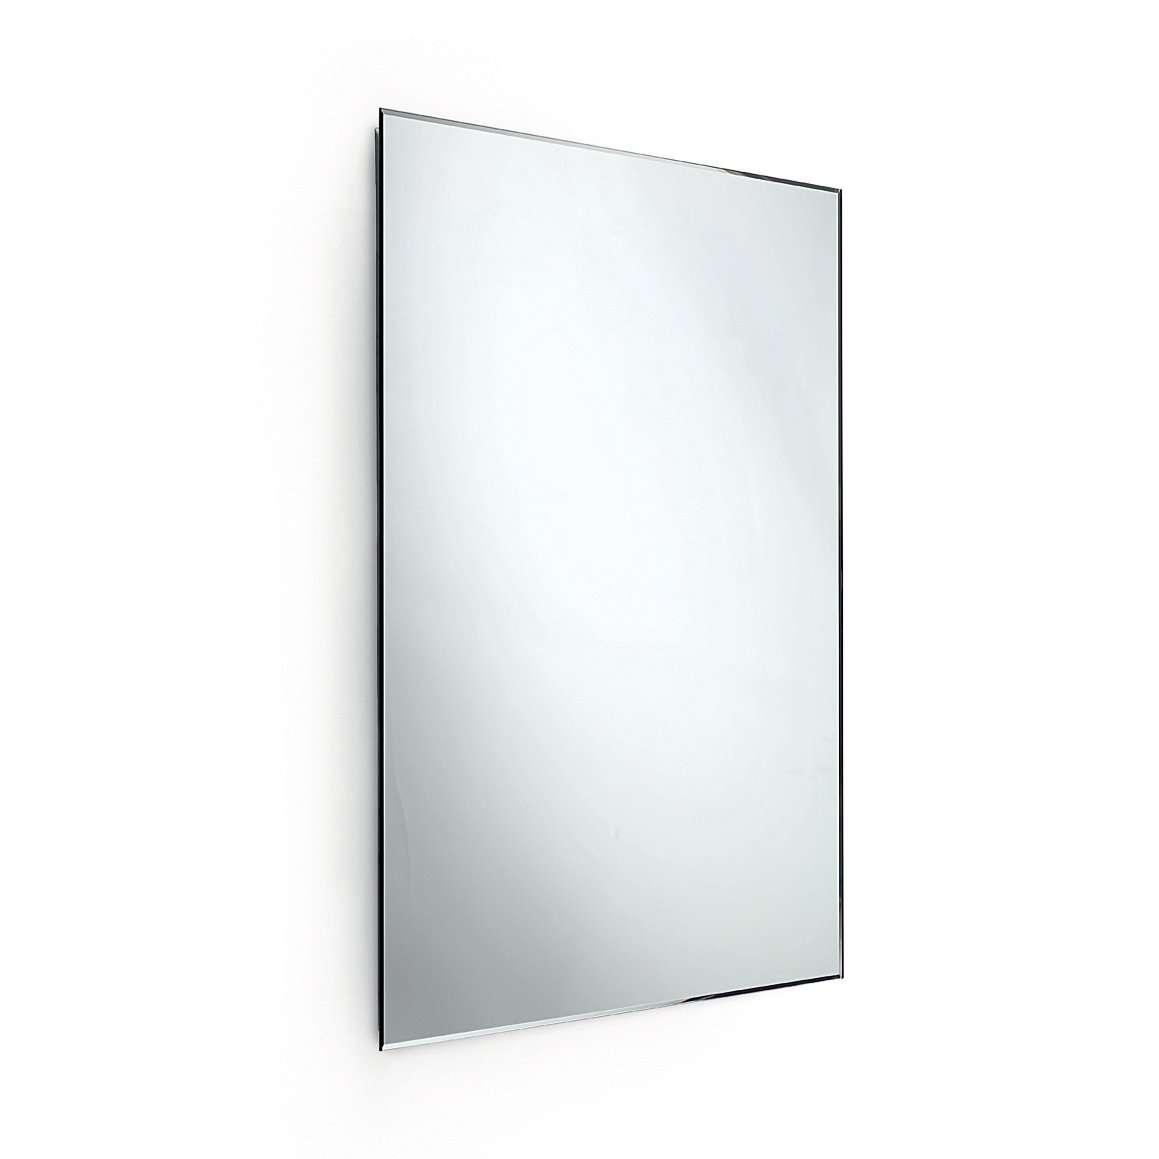 Lineabeta Specchio molato reversibile SPECI 64 x 130